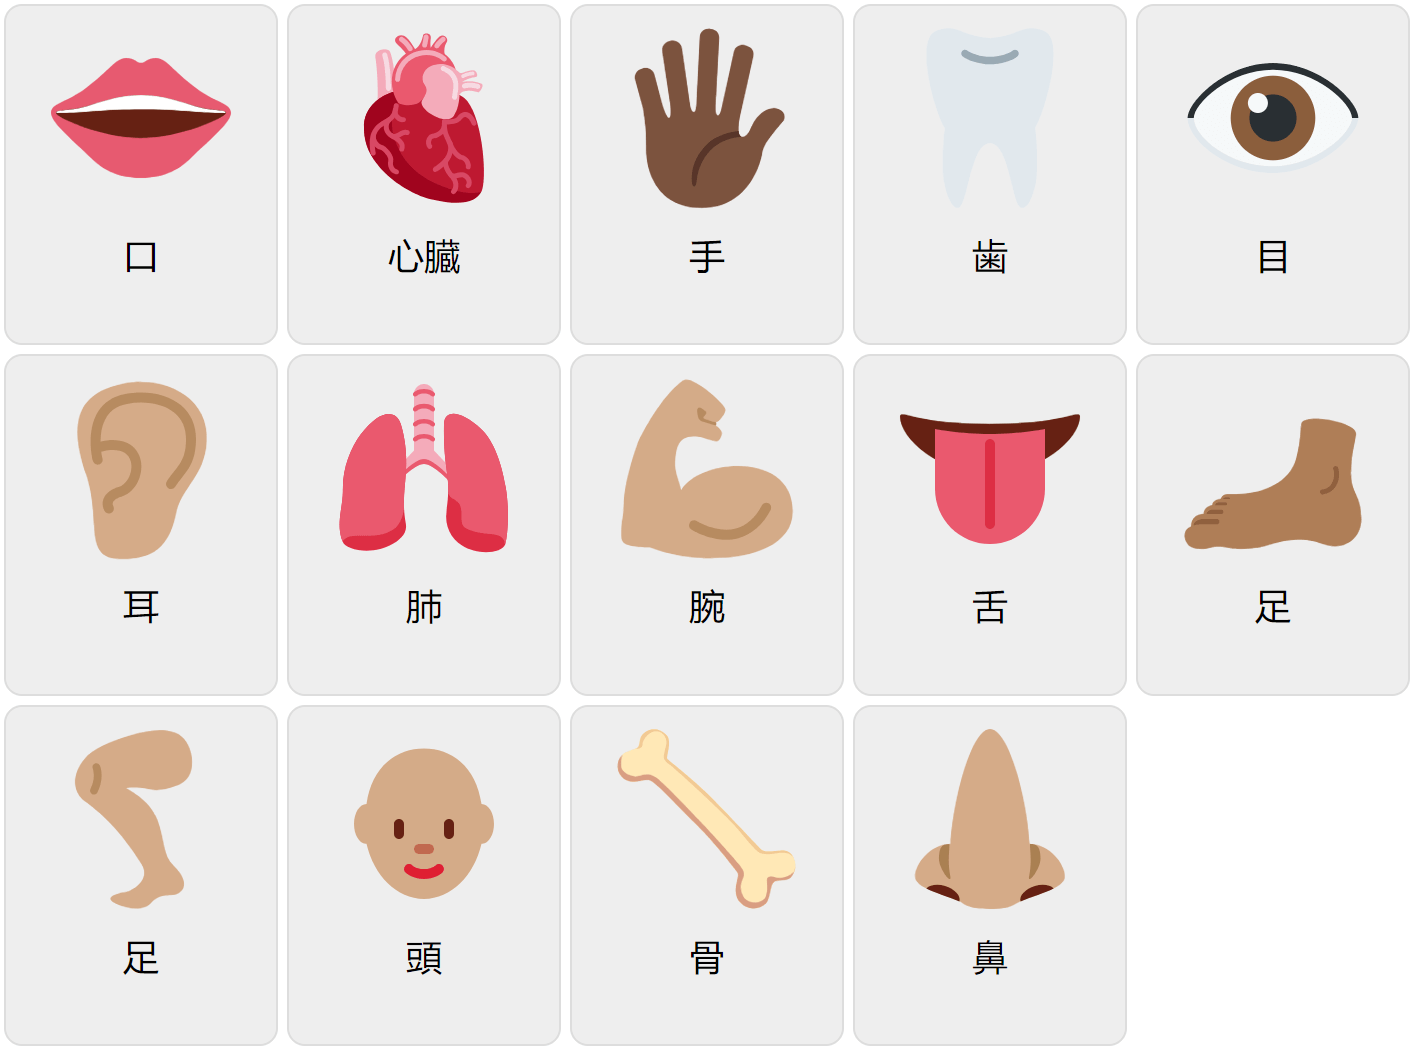 Kroppsdelar på japanska